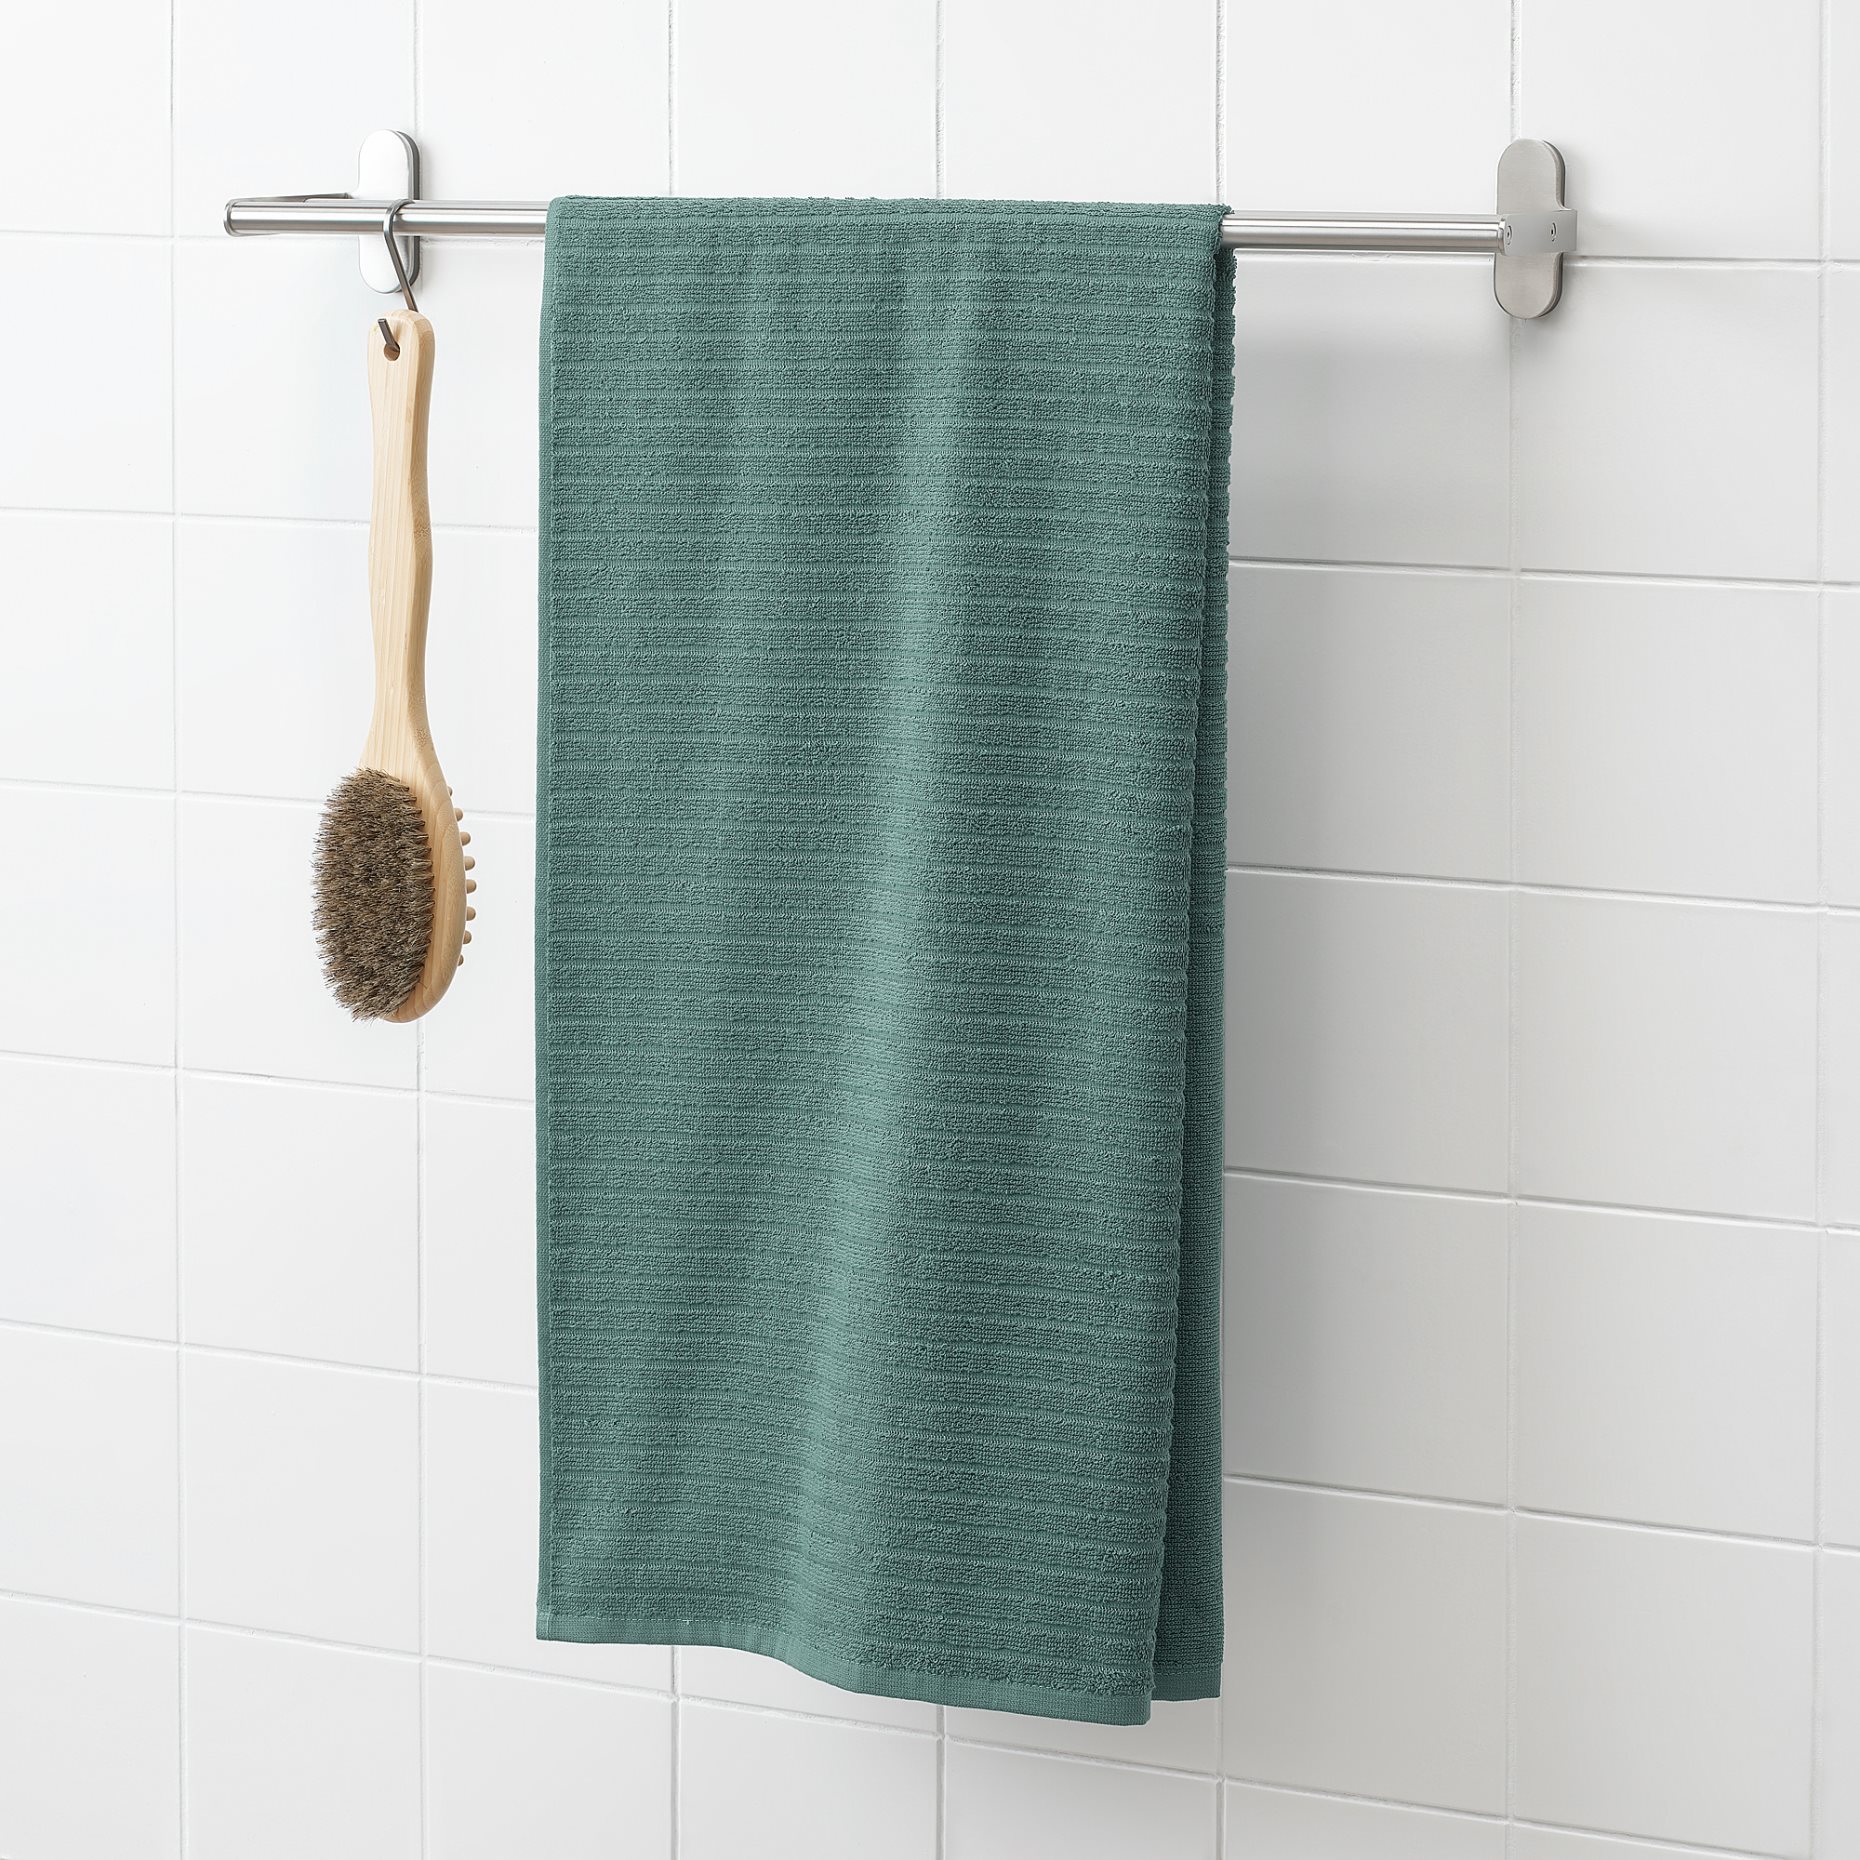 VÅGSJÖN, bath towel, 70x140 cm, 004.880.34